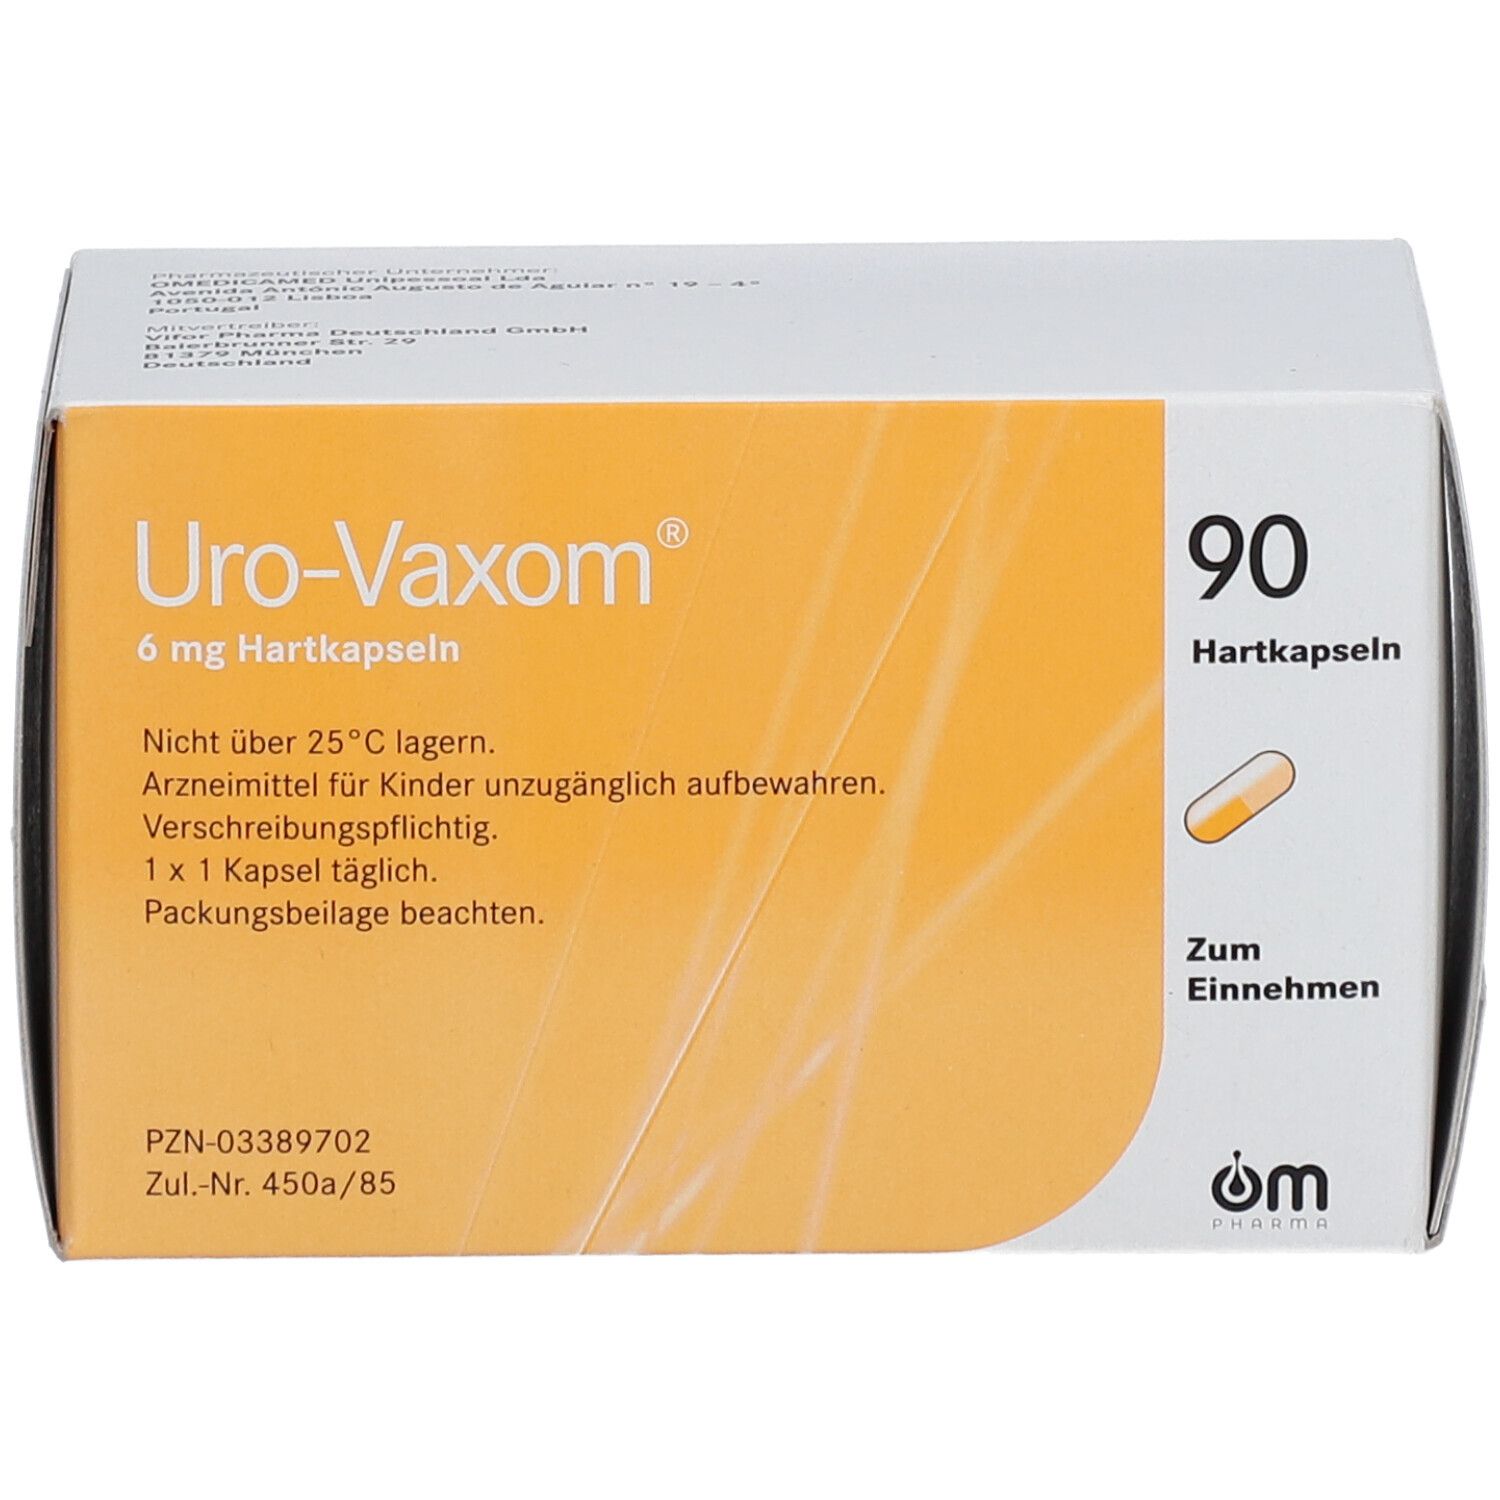 Urovaxom Immunomodulation Therapy